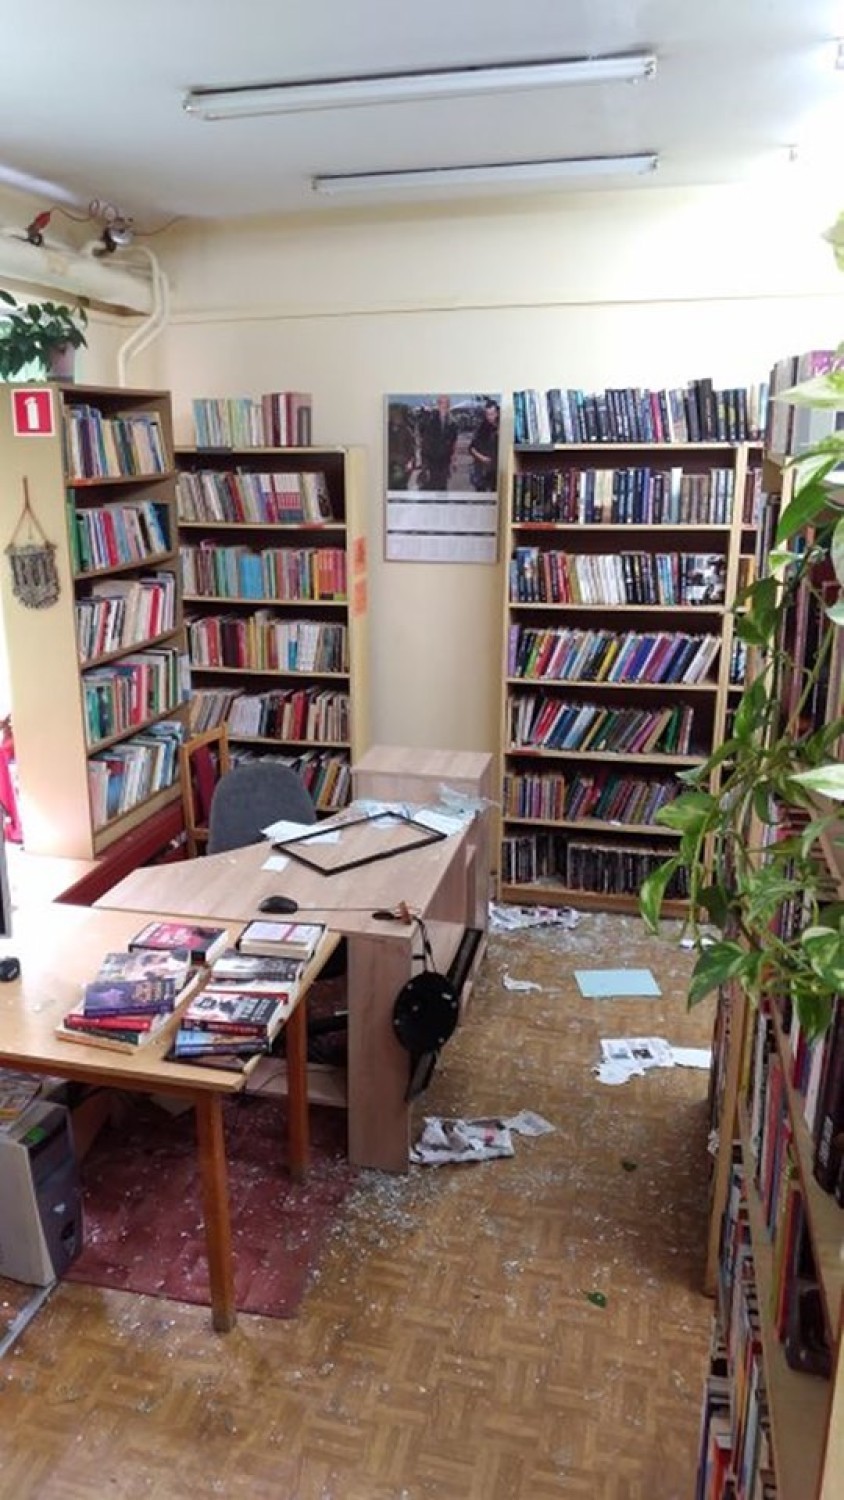 20 tysięcy złotych sięgają straty biblioteki uszkodzonej w...